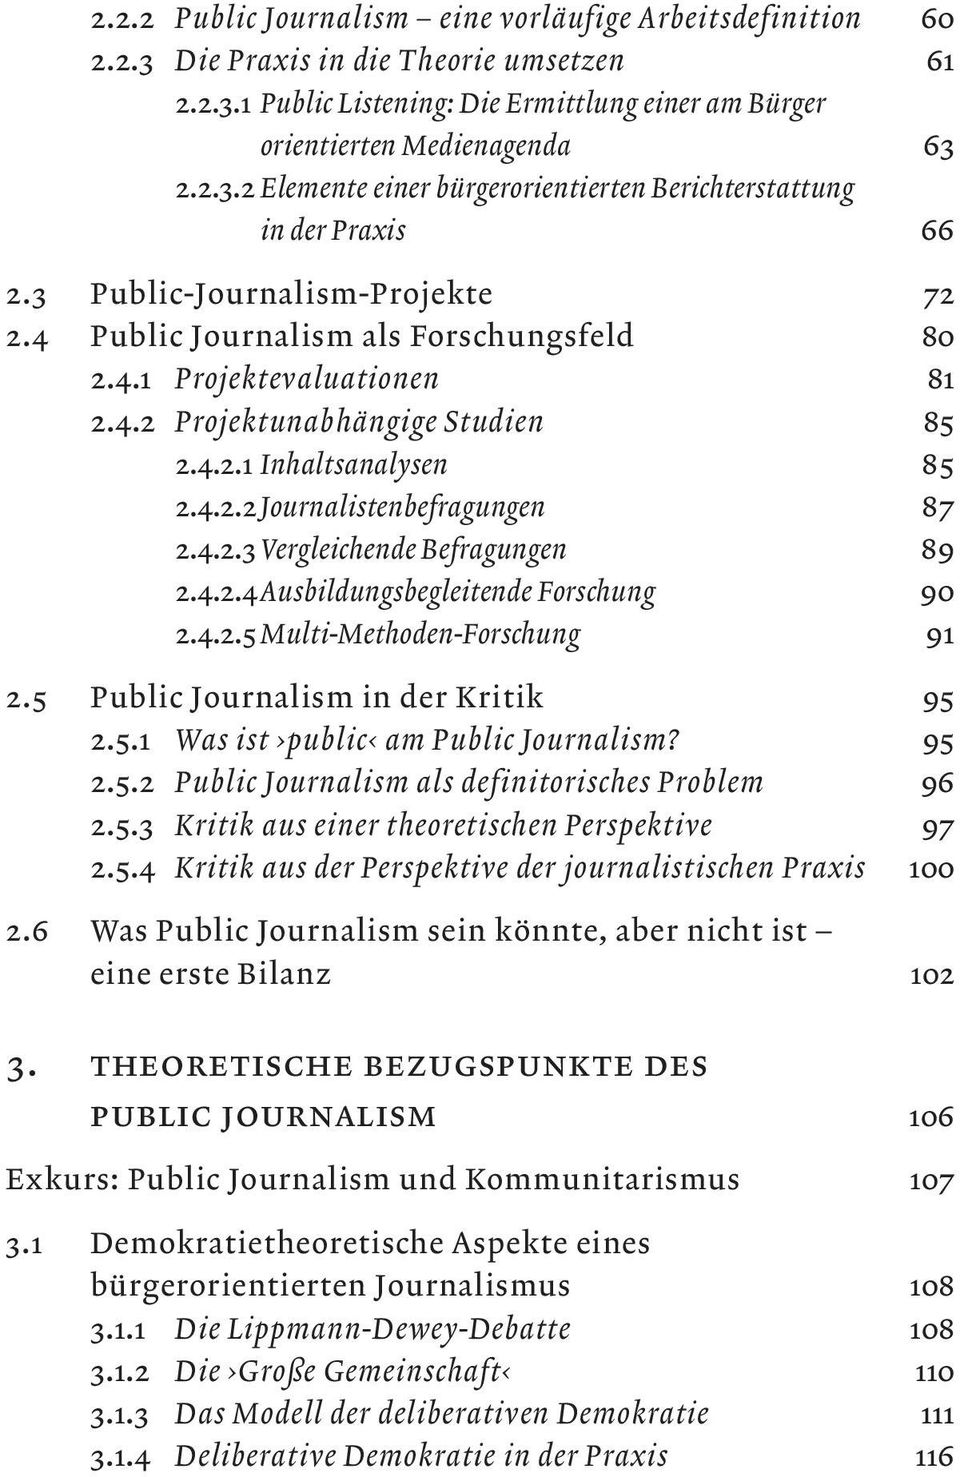 4.2.3 Vergleichende Befragungen 89 2.4.2.4 Ausbildungsbegleitende Forschung 90 2.4.2.5 Multi-Methoden-Forschung 91 2.5 Public Journalism in der Kritik 95 2.5.1 Was ist public am Public Journalism?